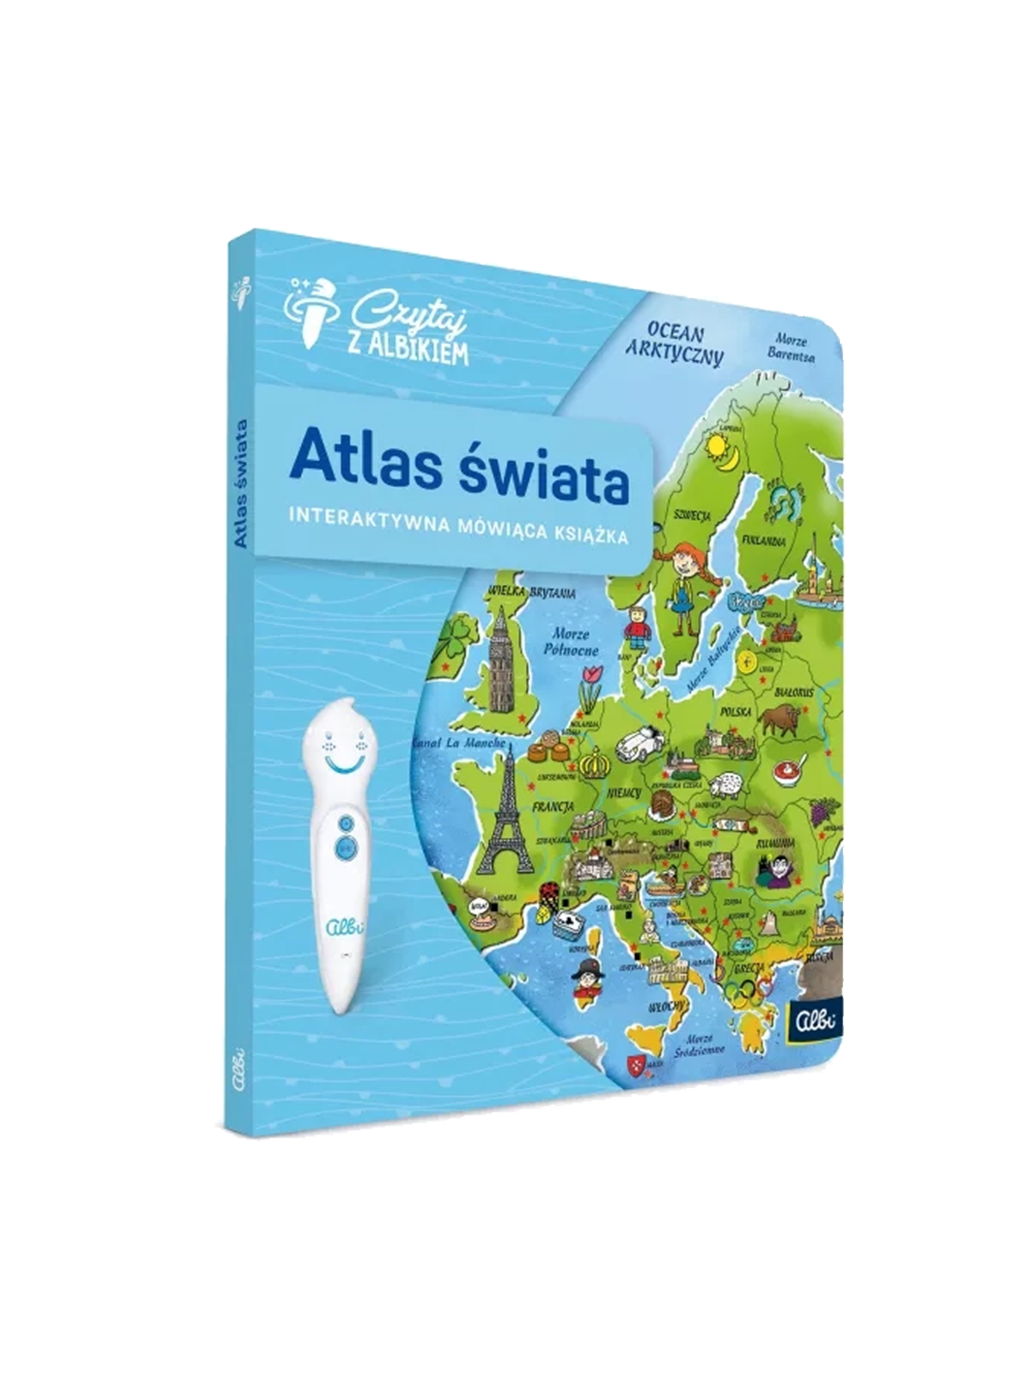 Atlas Swiata. Książka interaktywna